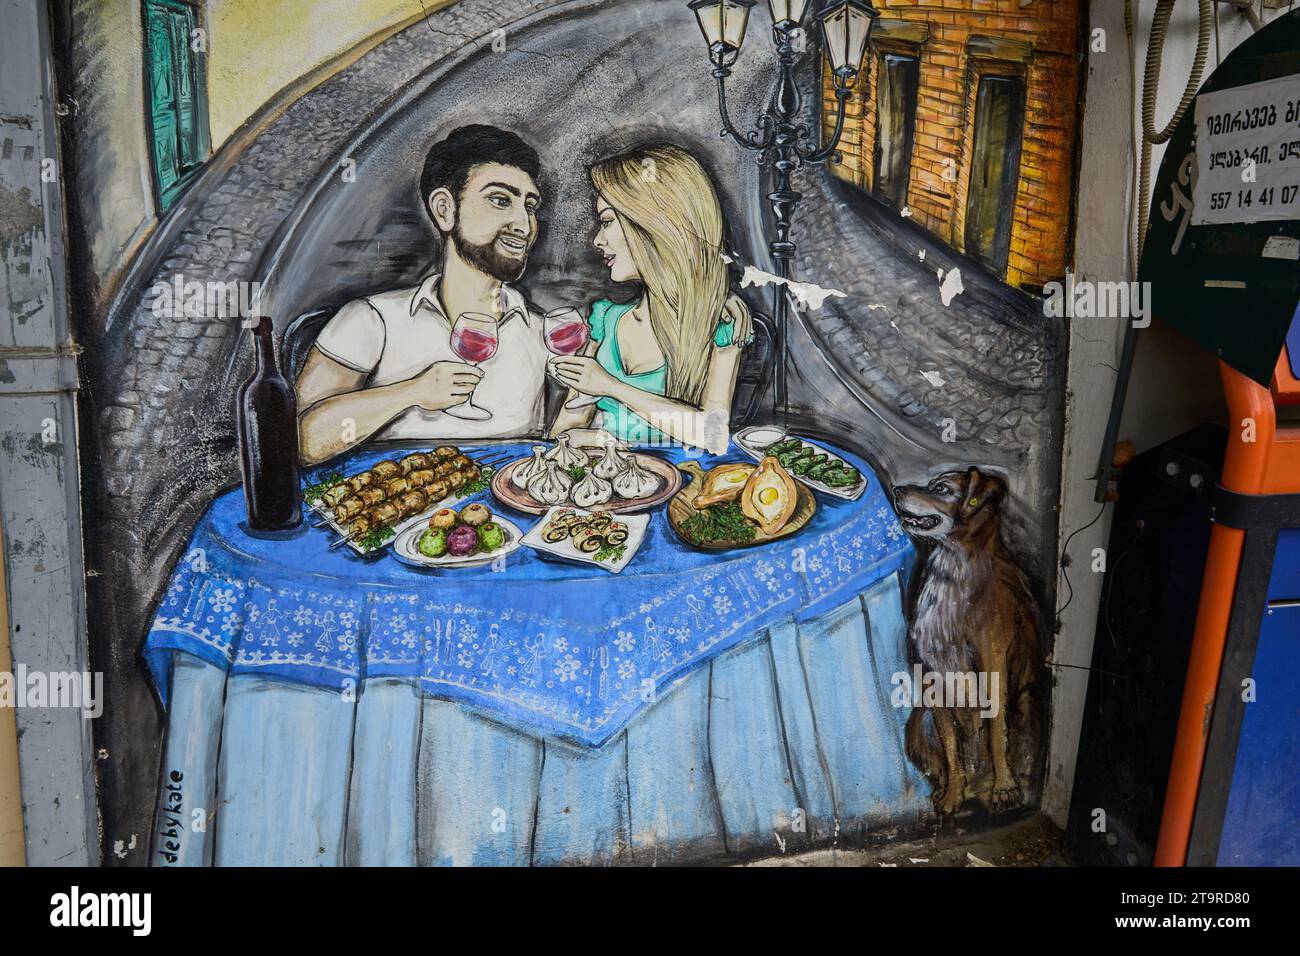 Grafitto, junges Paar beim Essen, typisch georgische Speisen, Bankomat, Stadtteil Awlabari, armenisches Viertel, Avlabari, Tiflis, Georgien Foto Stock